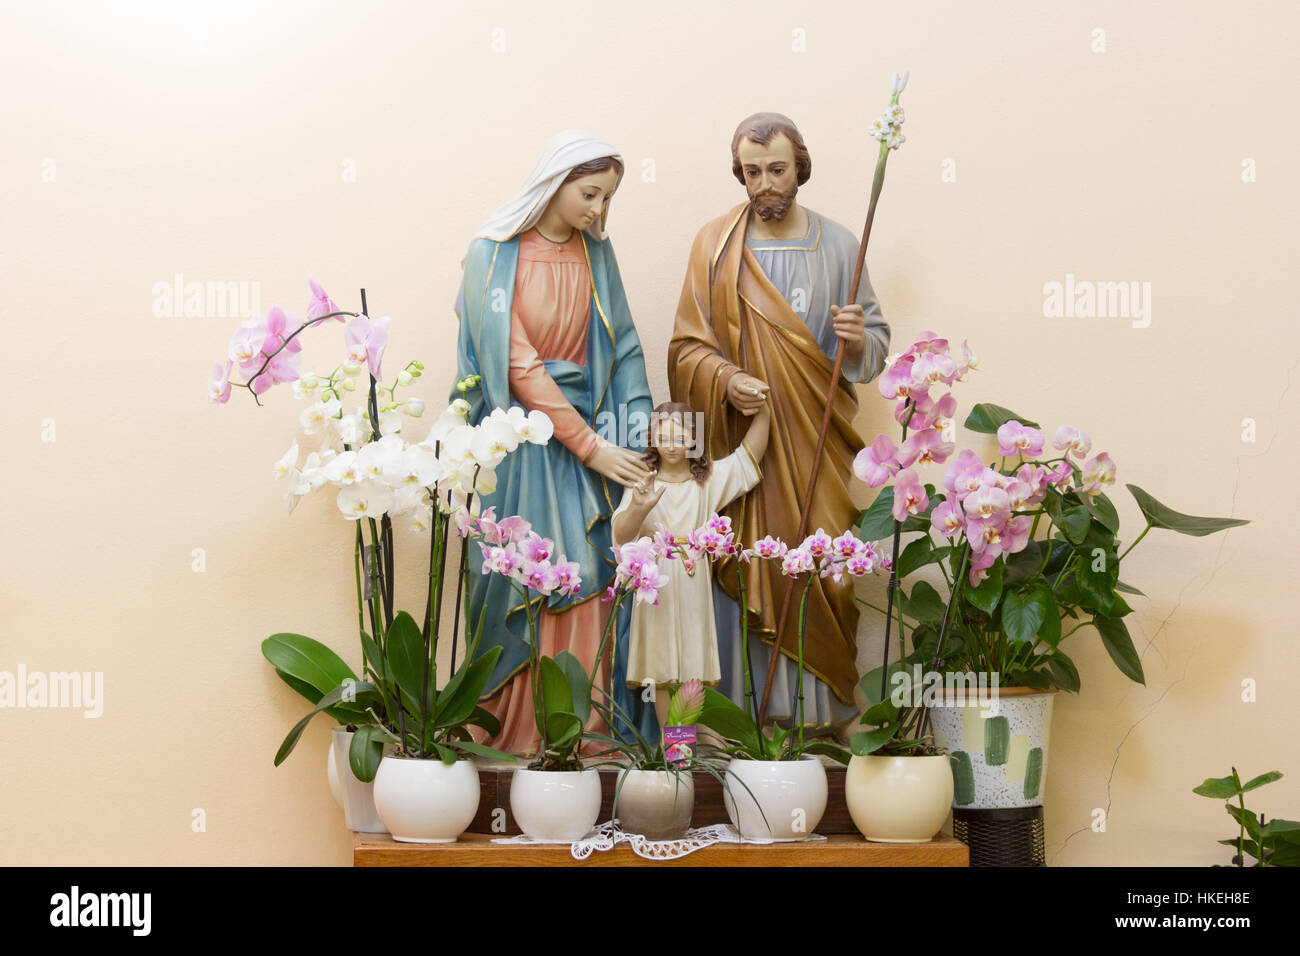 Medjugorje, Bosnie et Herzégovine, le 21 août 2016. la statue de la sainte famille - Jésus, Marie et Joseph entouré d'orchidées blanches et roses. Banque D'Images